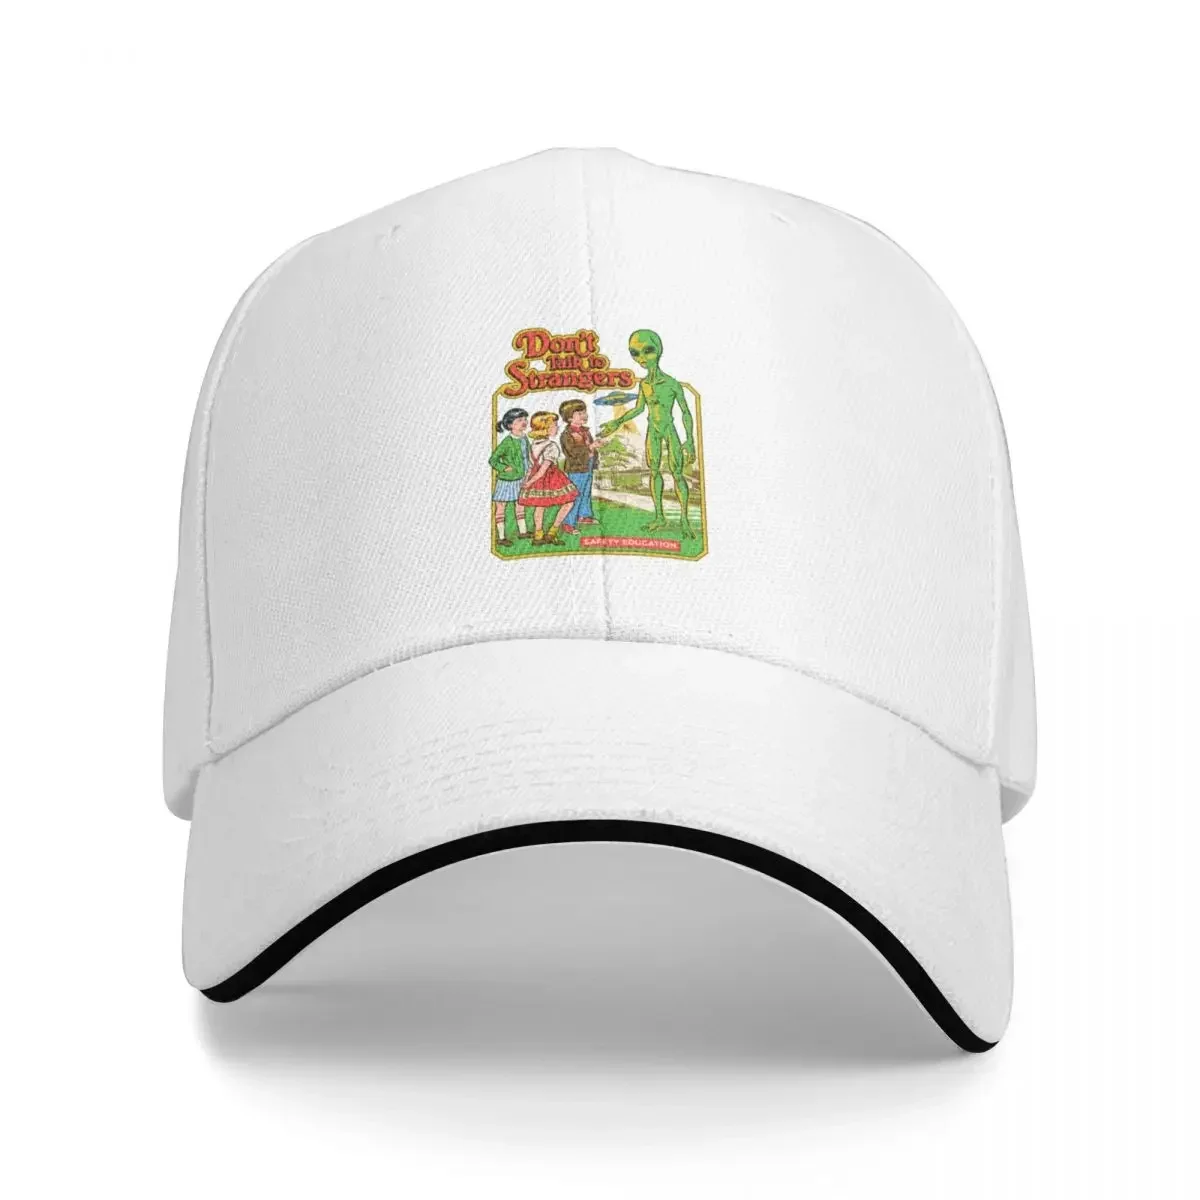 

Don't Talk To Strangers Cap Baseball Cap Luxury hat sun hat for children funny hat caps for women Men's